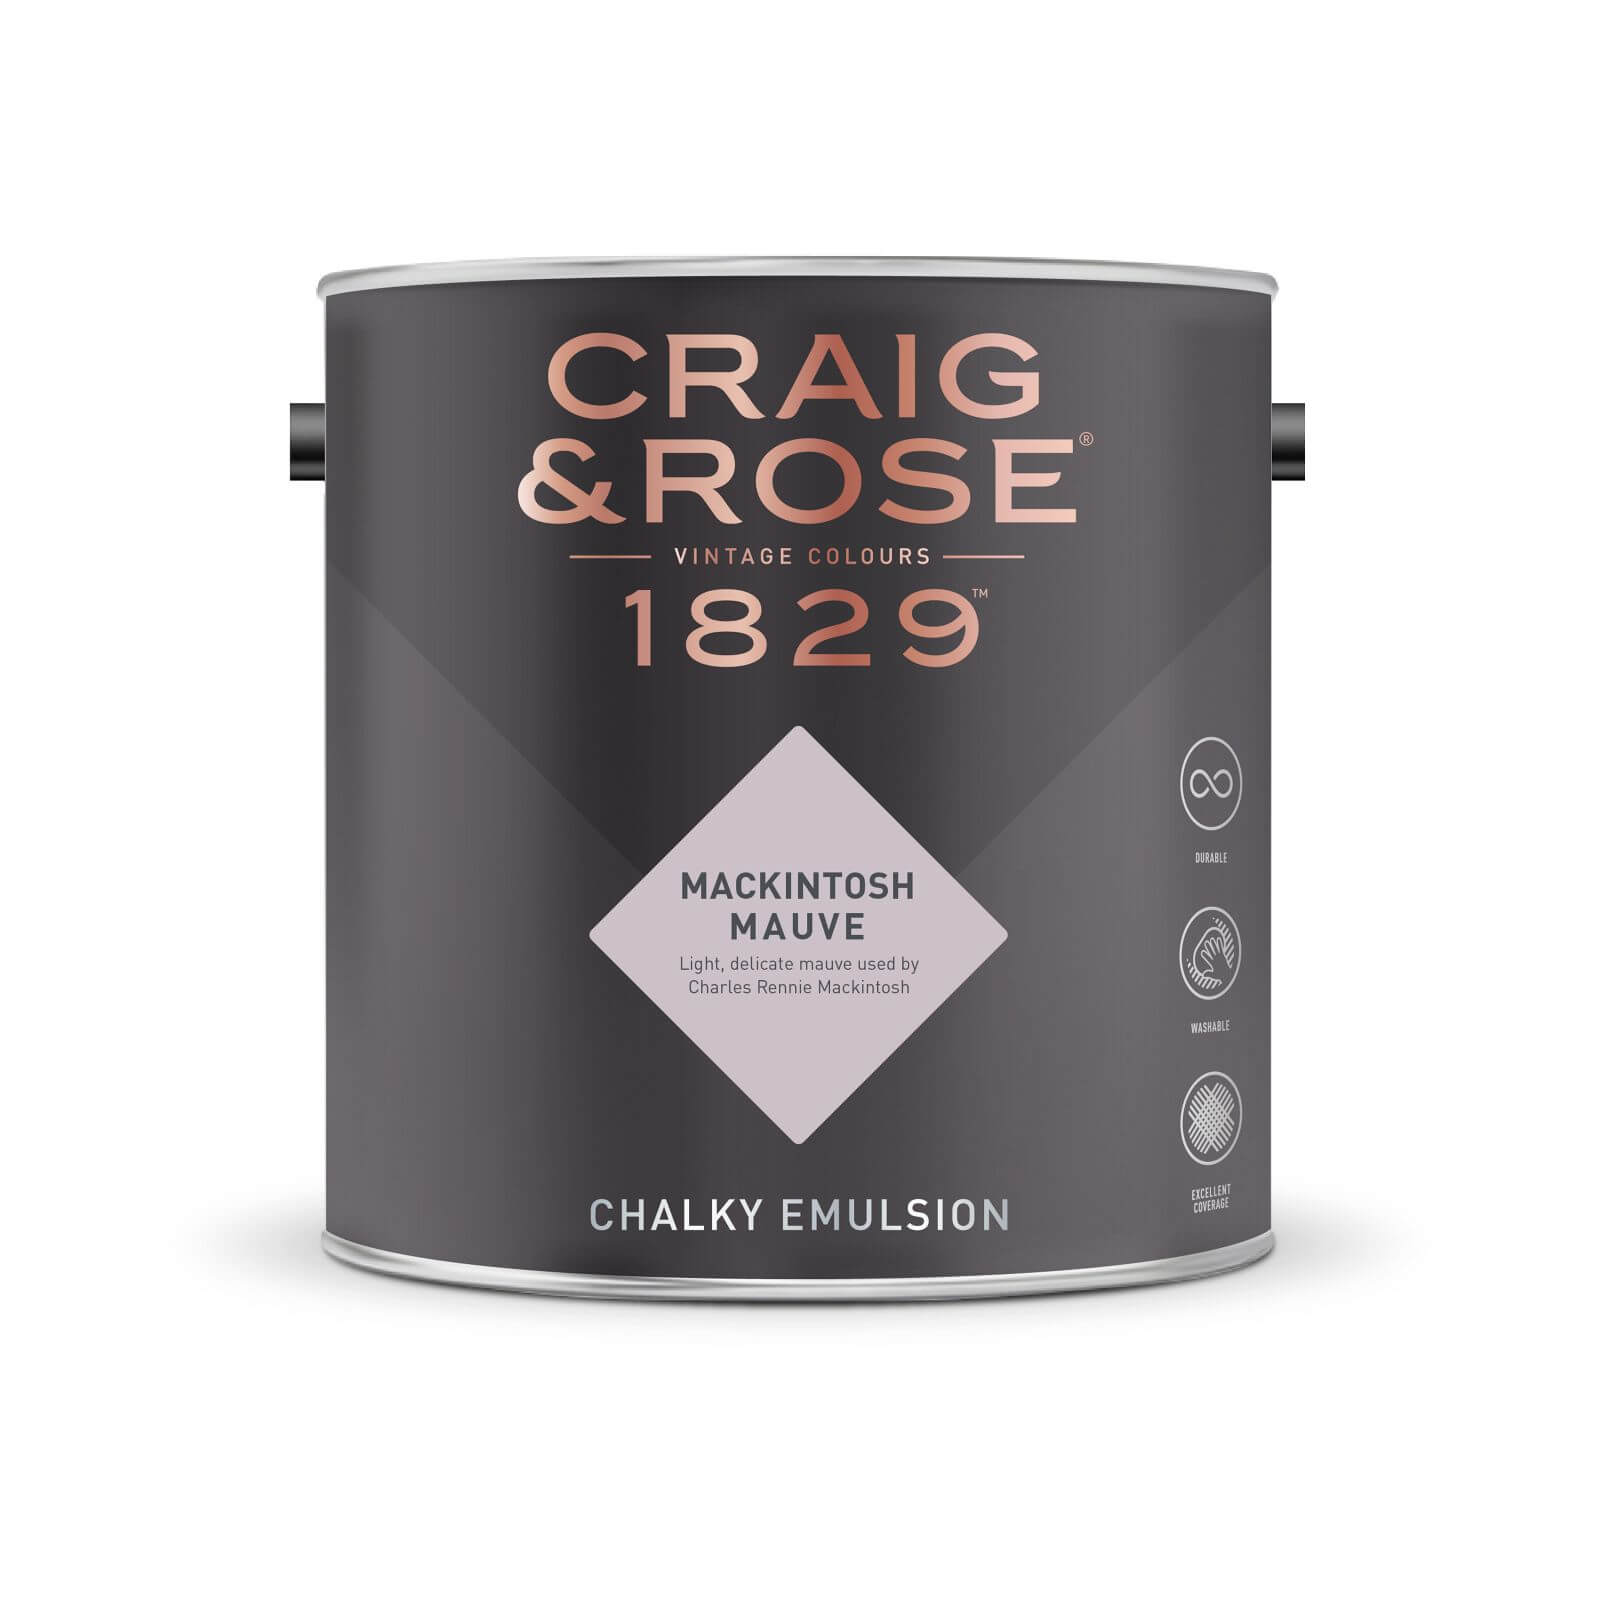 Craig & Rose 1829 Chalky Emulsion Paint Mackintosh Mauve - 5L